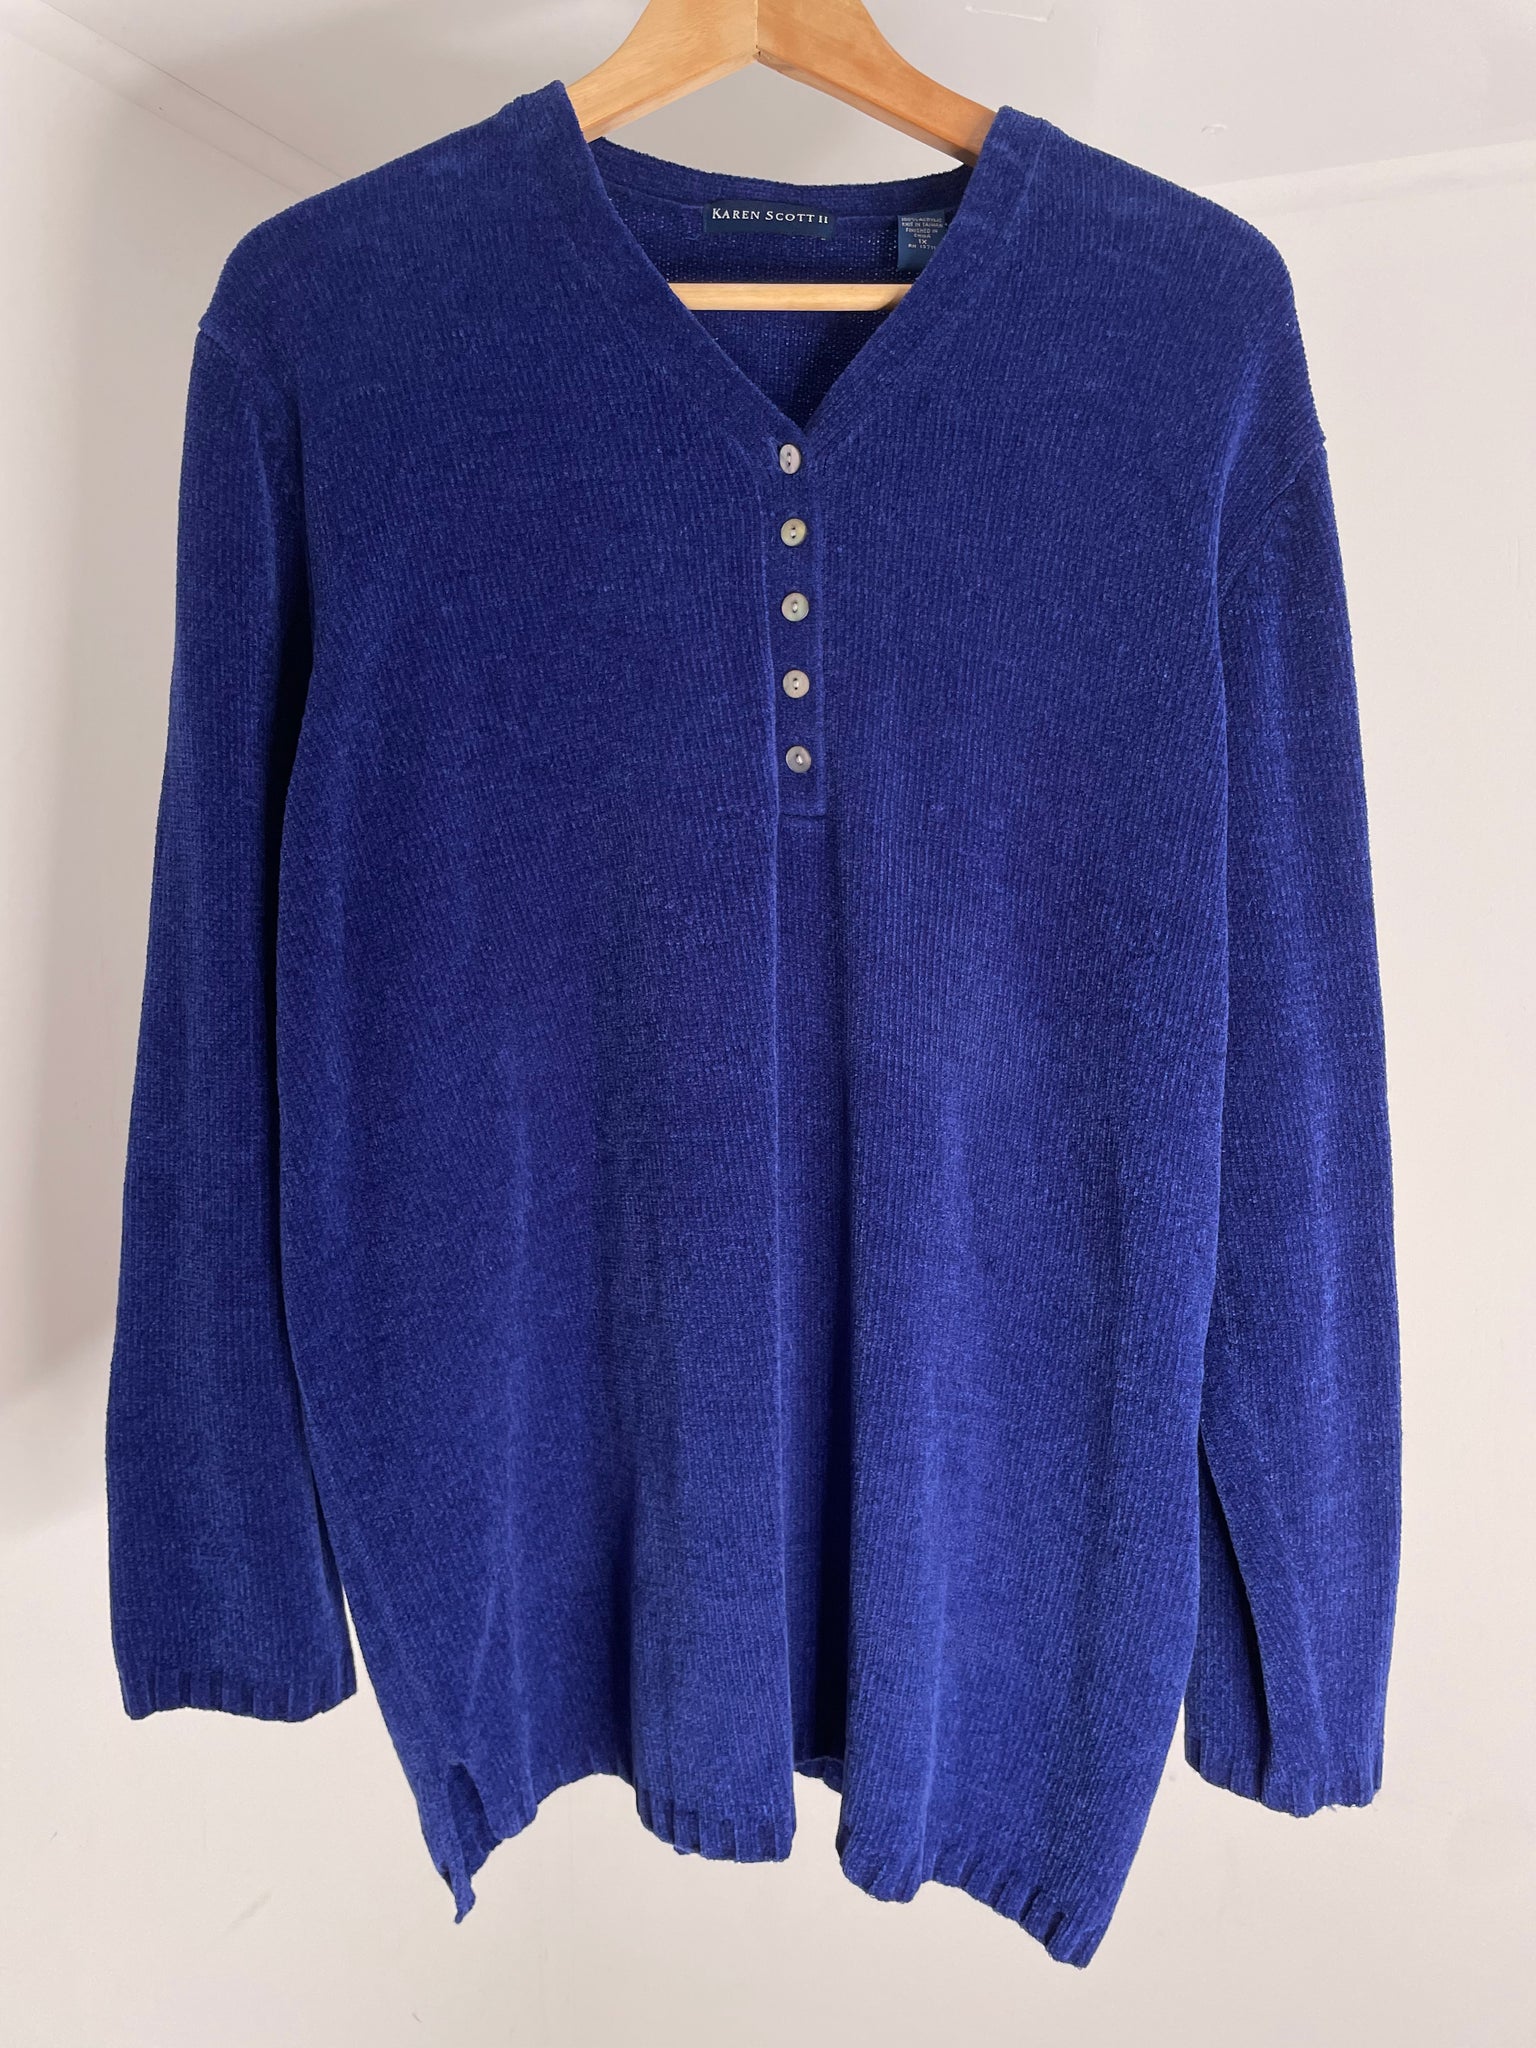 Cobalt Soft Sweater XL